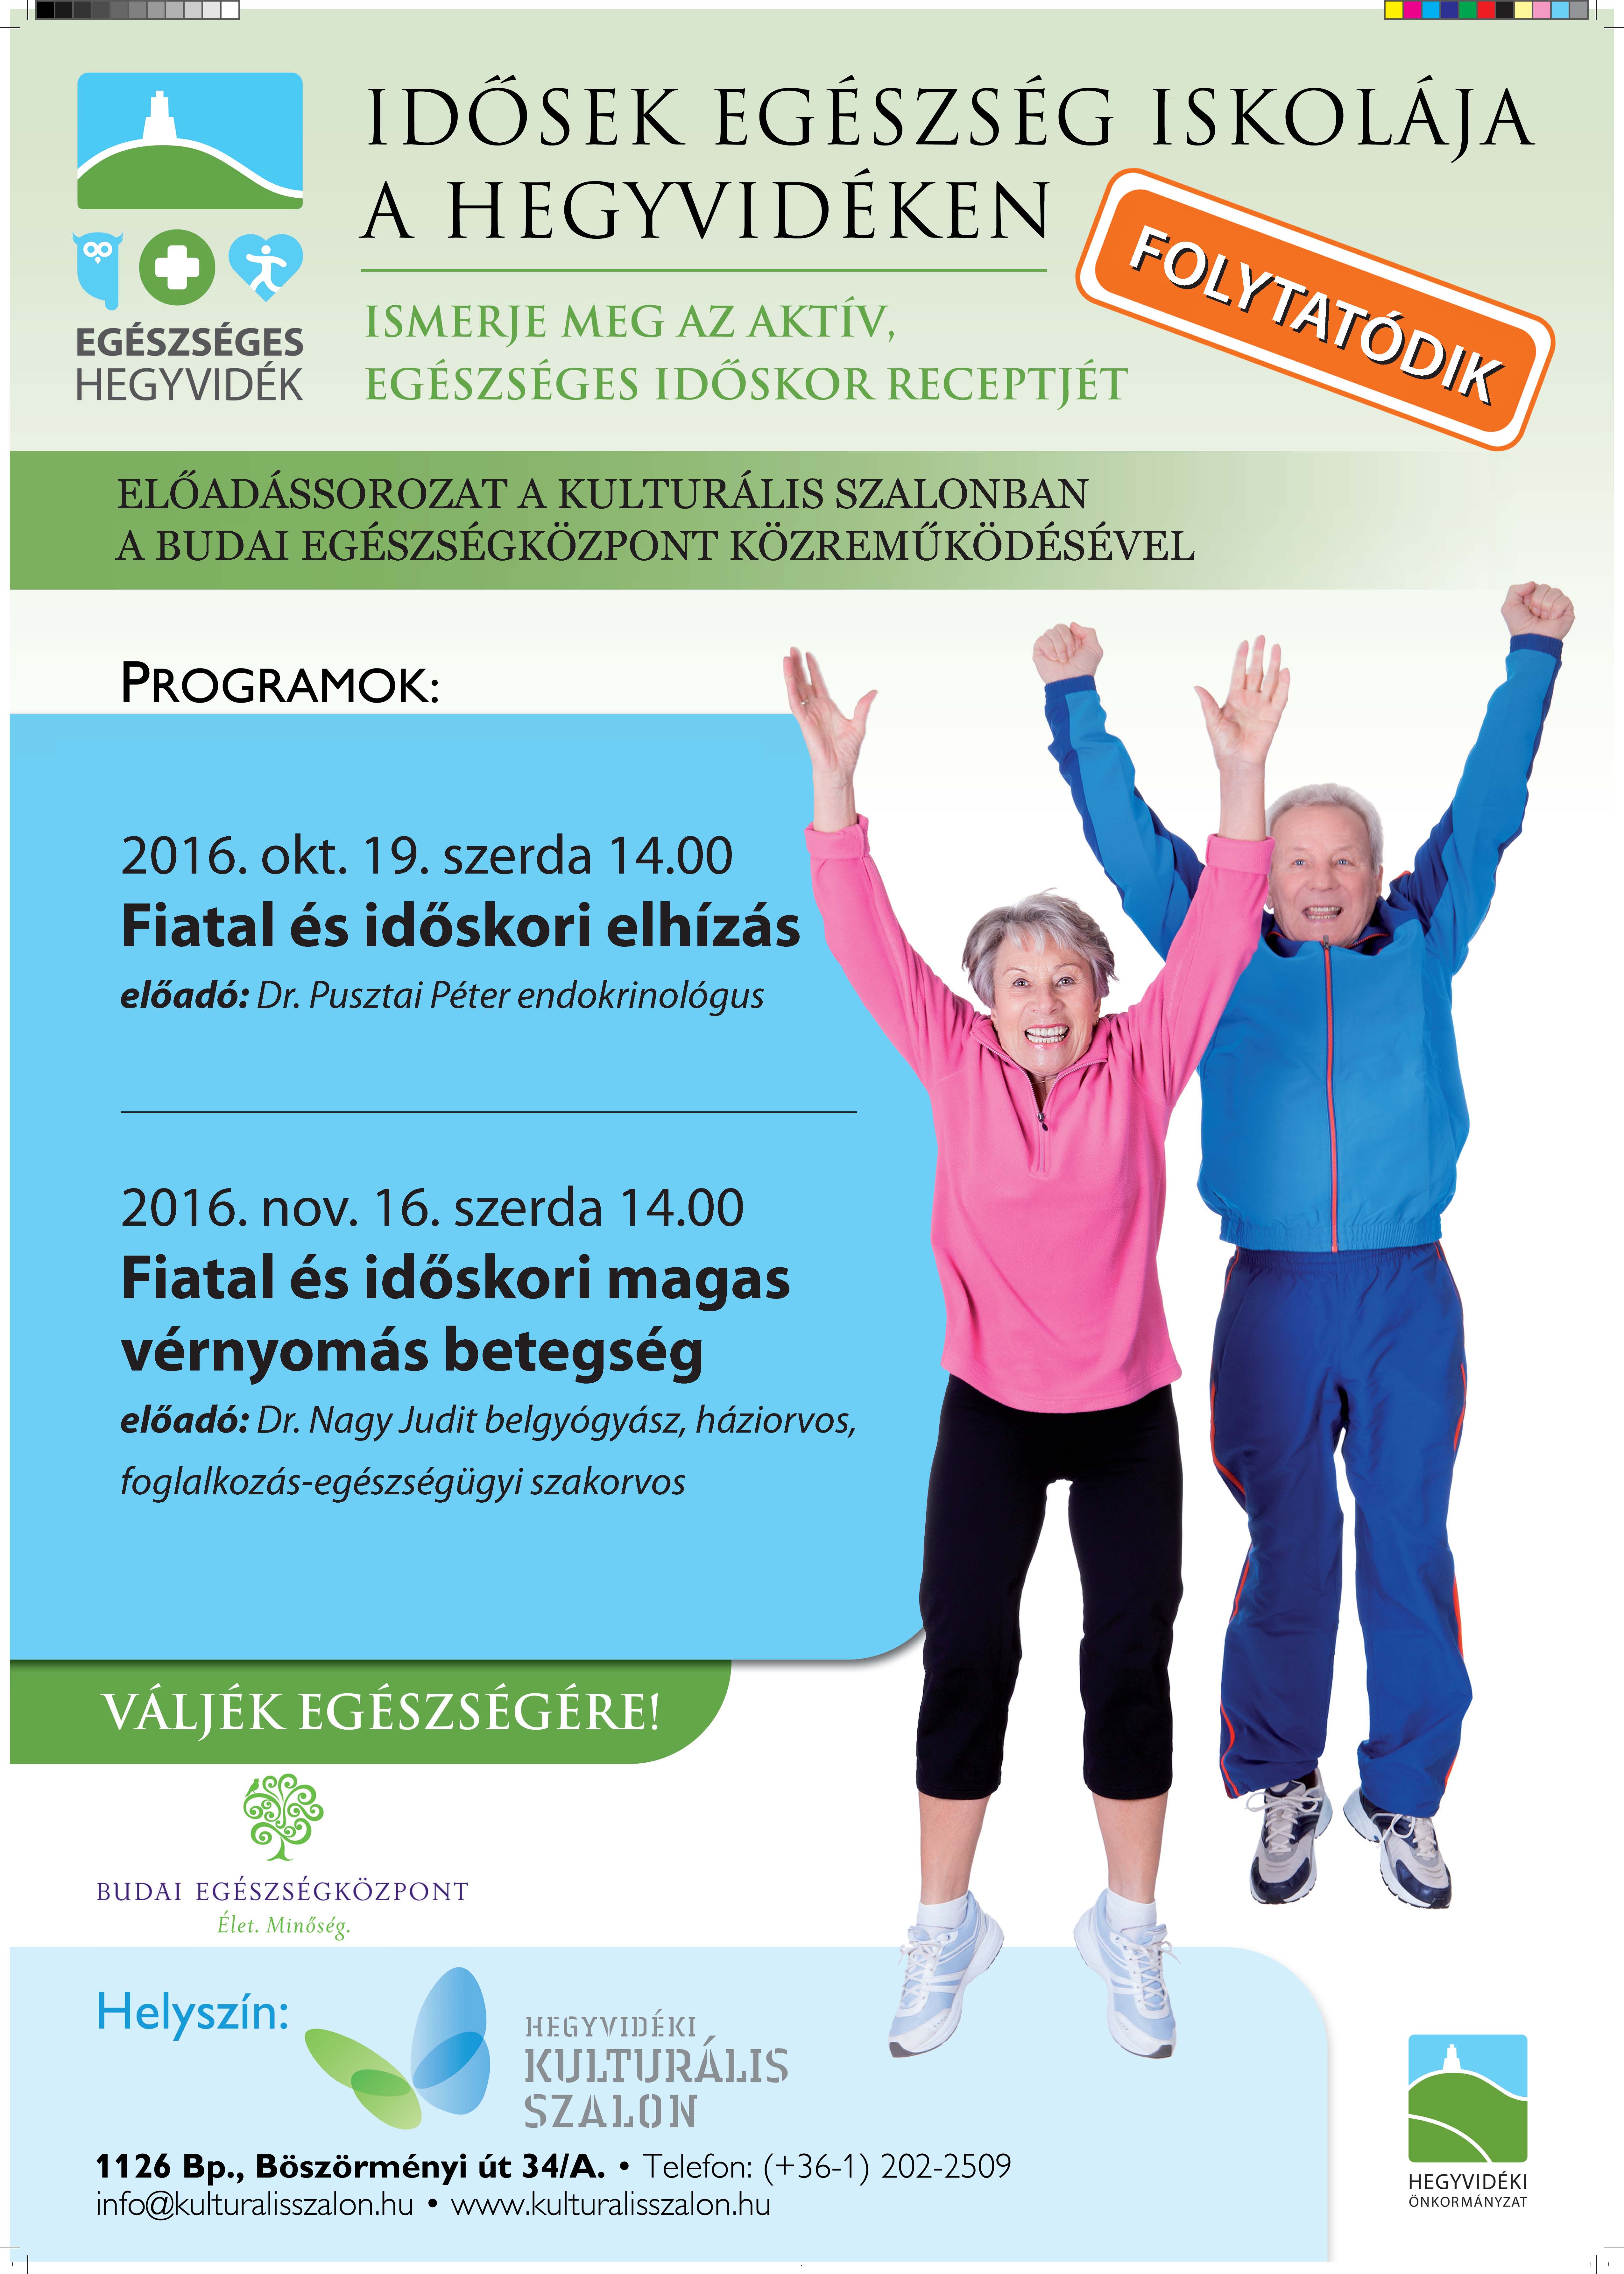  Egészséges Hegyvidék Program plakát